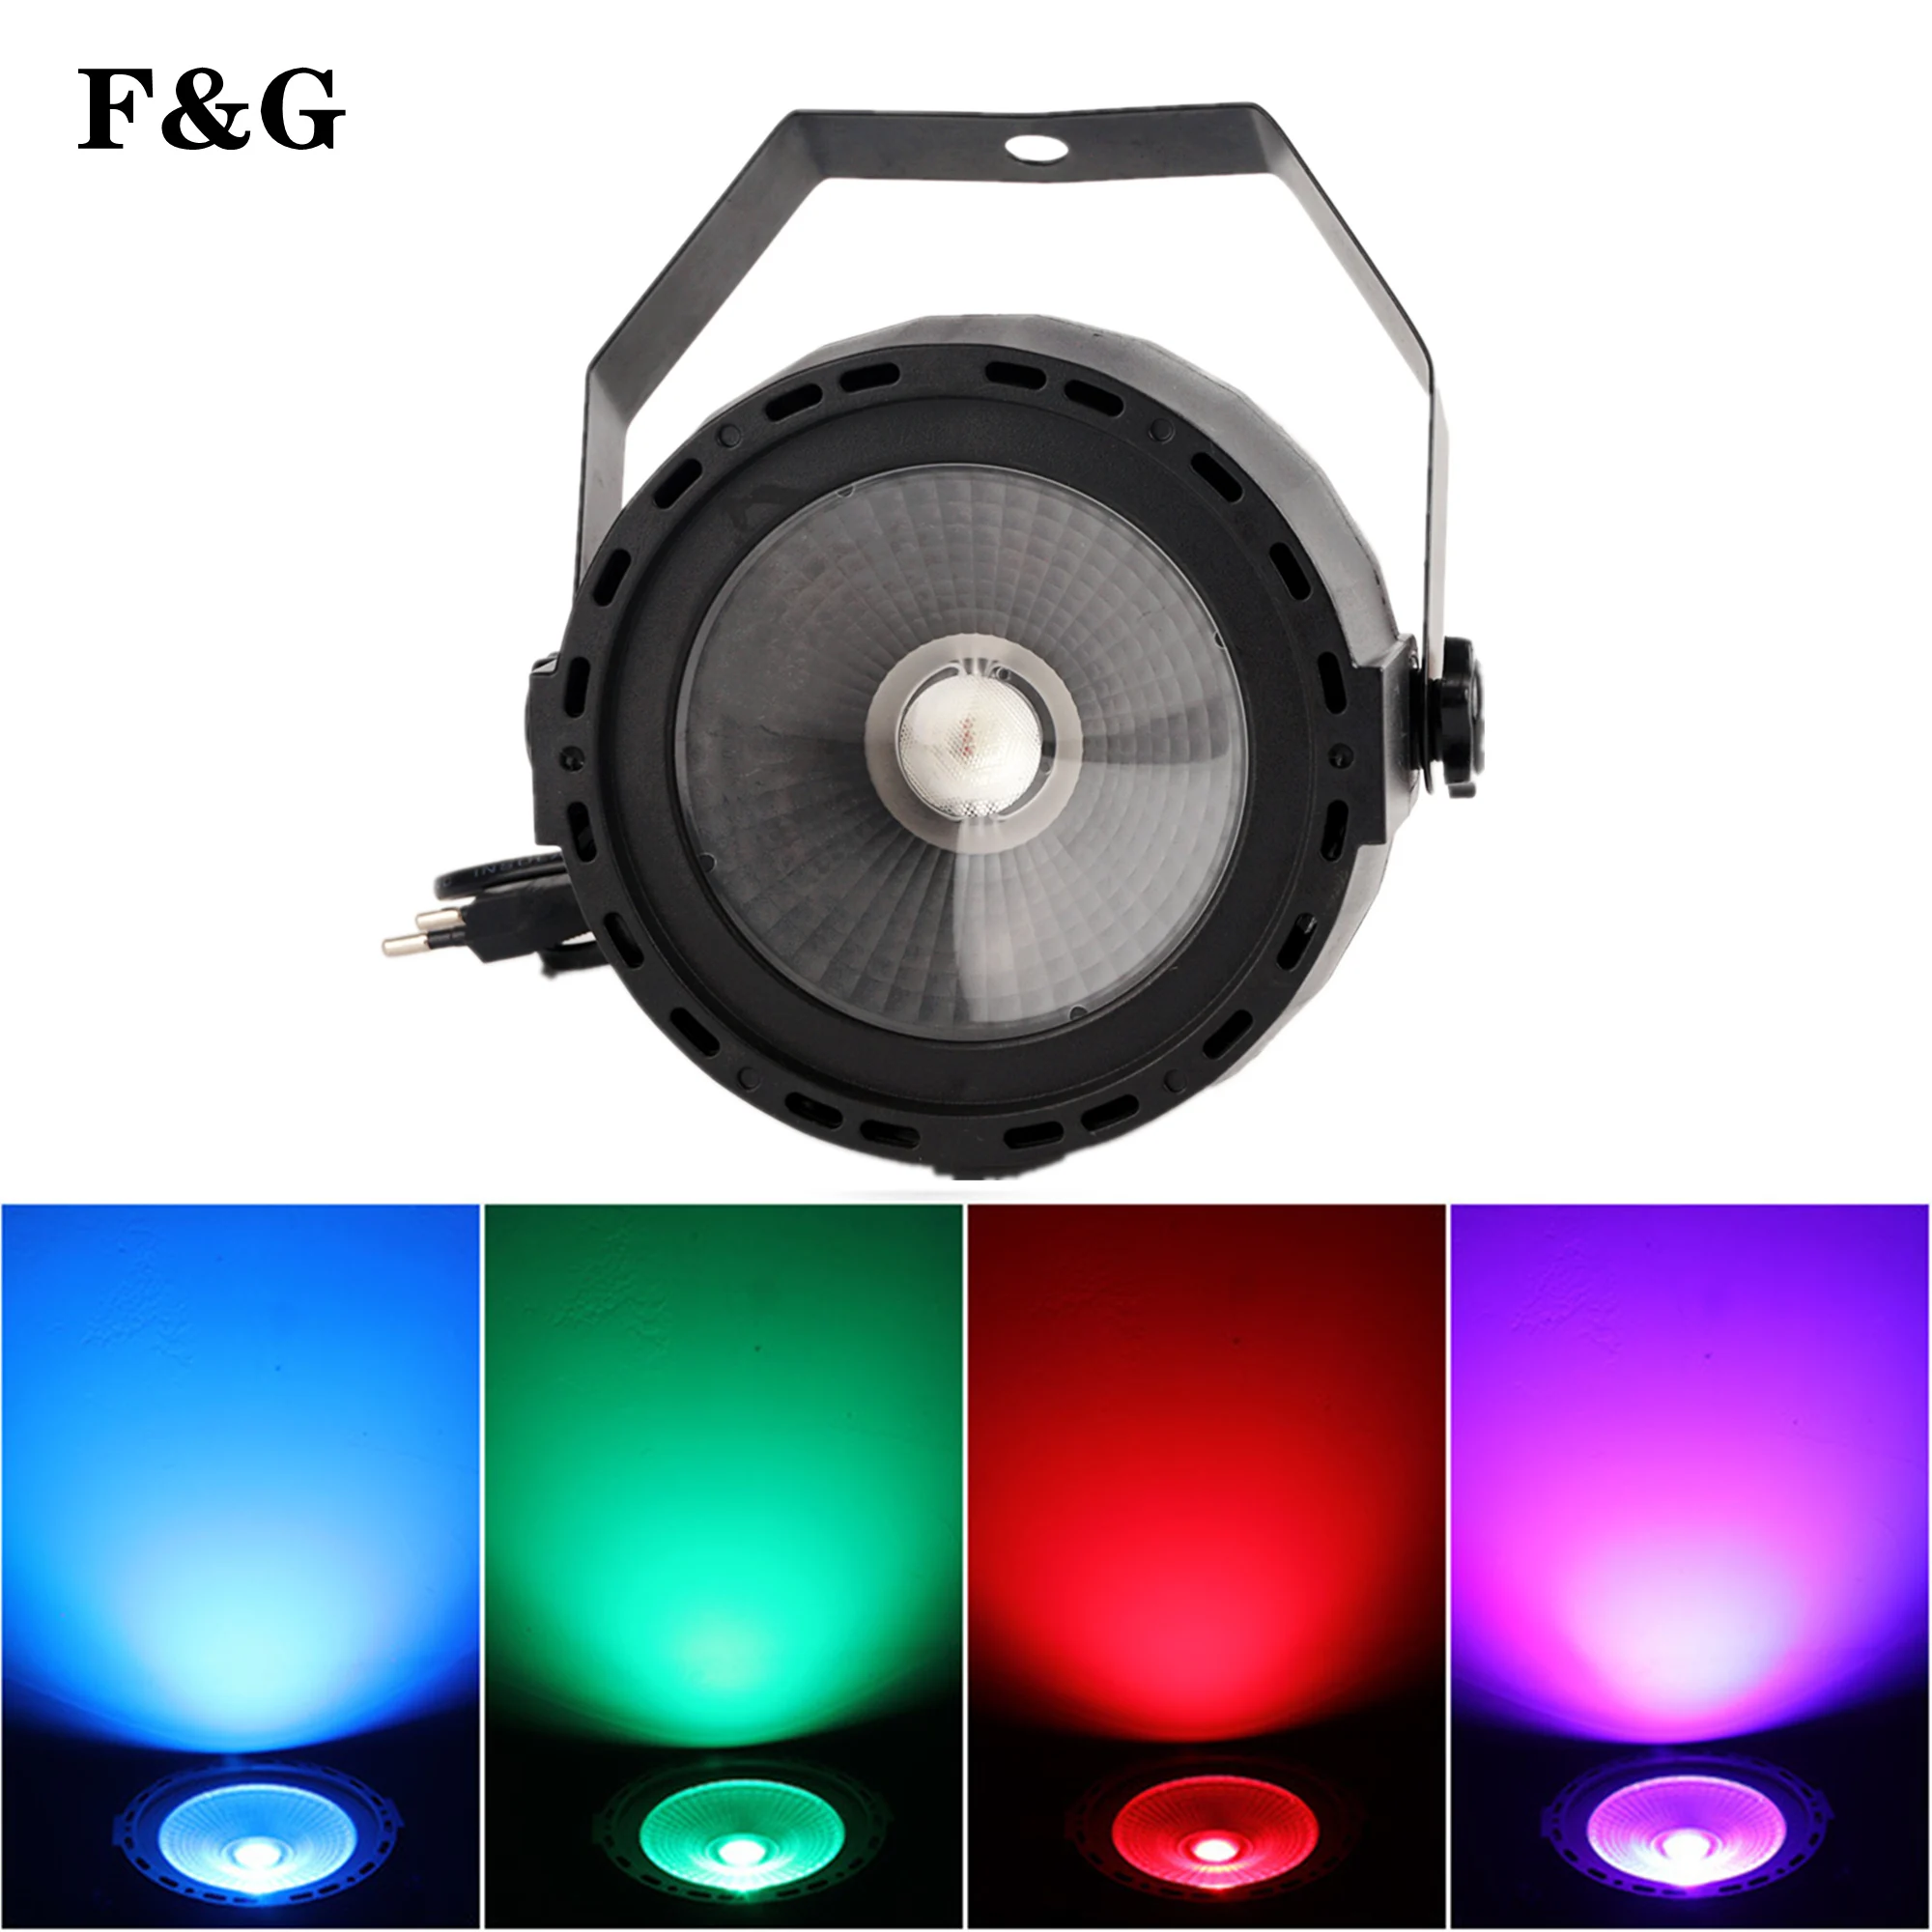 

Luz LED COB Par 3 en 1, Control remoto inalámbrico, 30W, RGB, efecto de iluminación de escenario profesional para Fiesta de DJ y